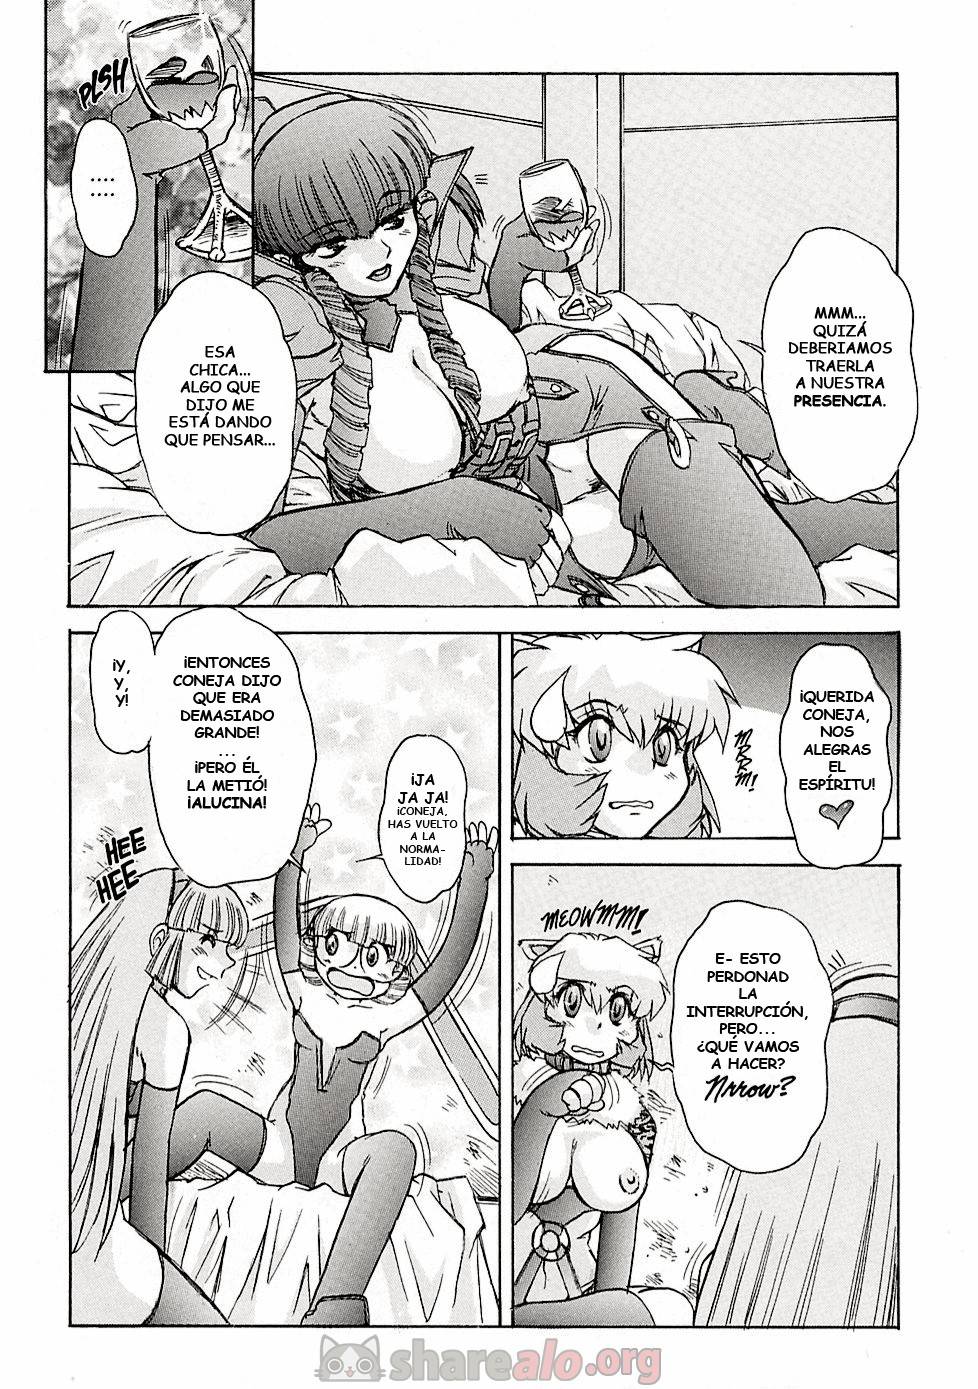 Alice Extreme (Parte #7 y #8) - 4 - Comics Porno - Hentai Manga - Cartoon XXX